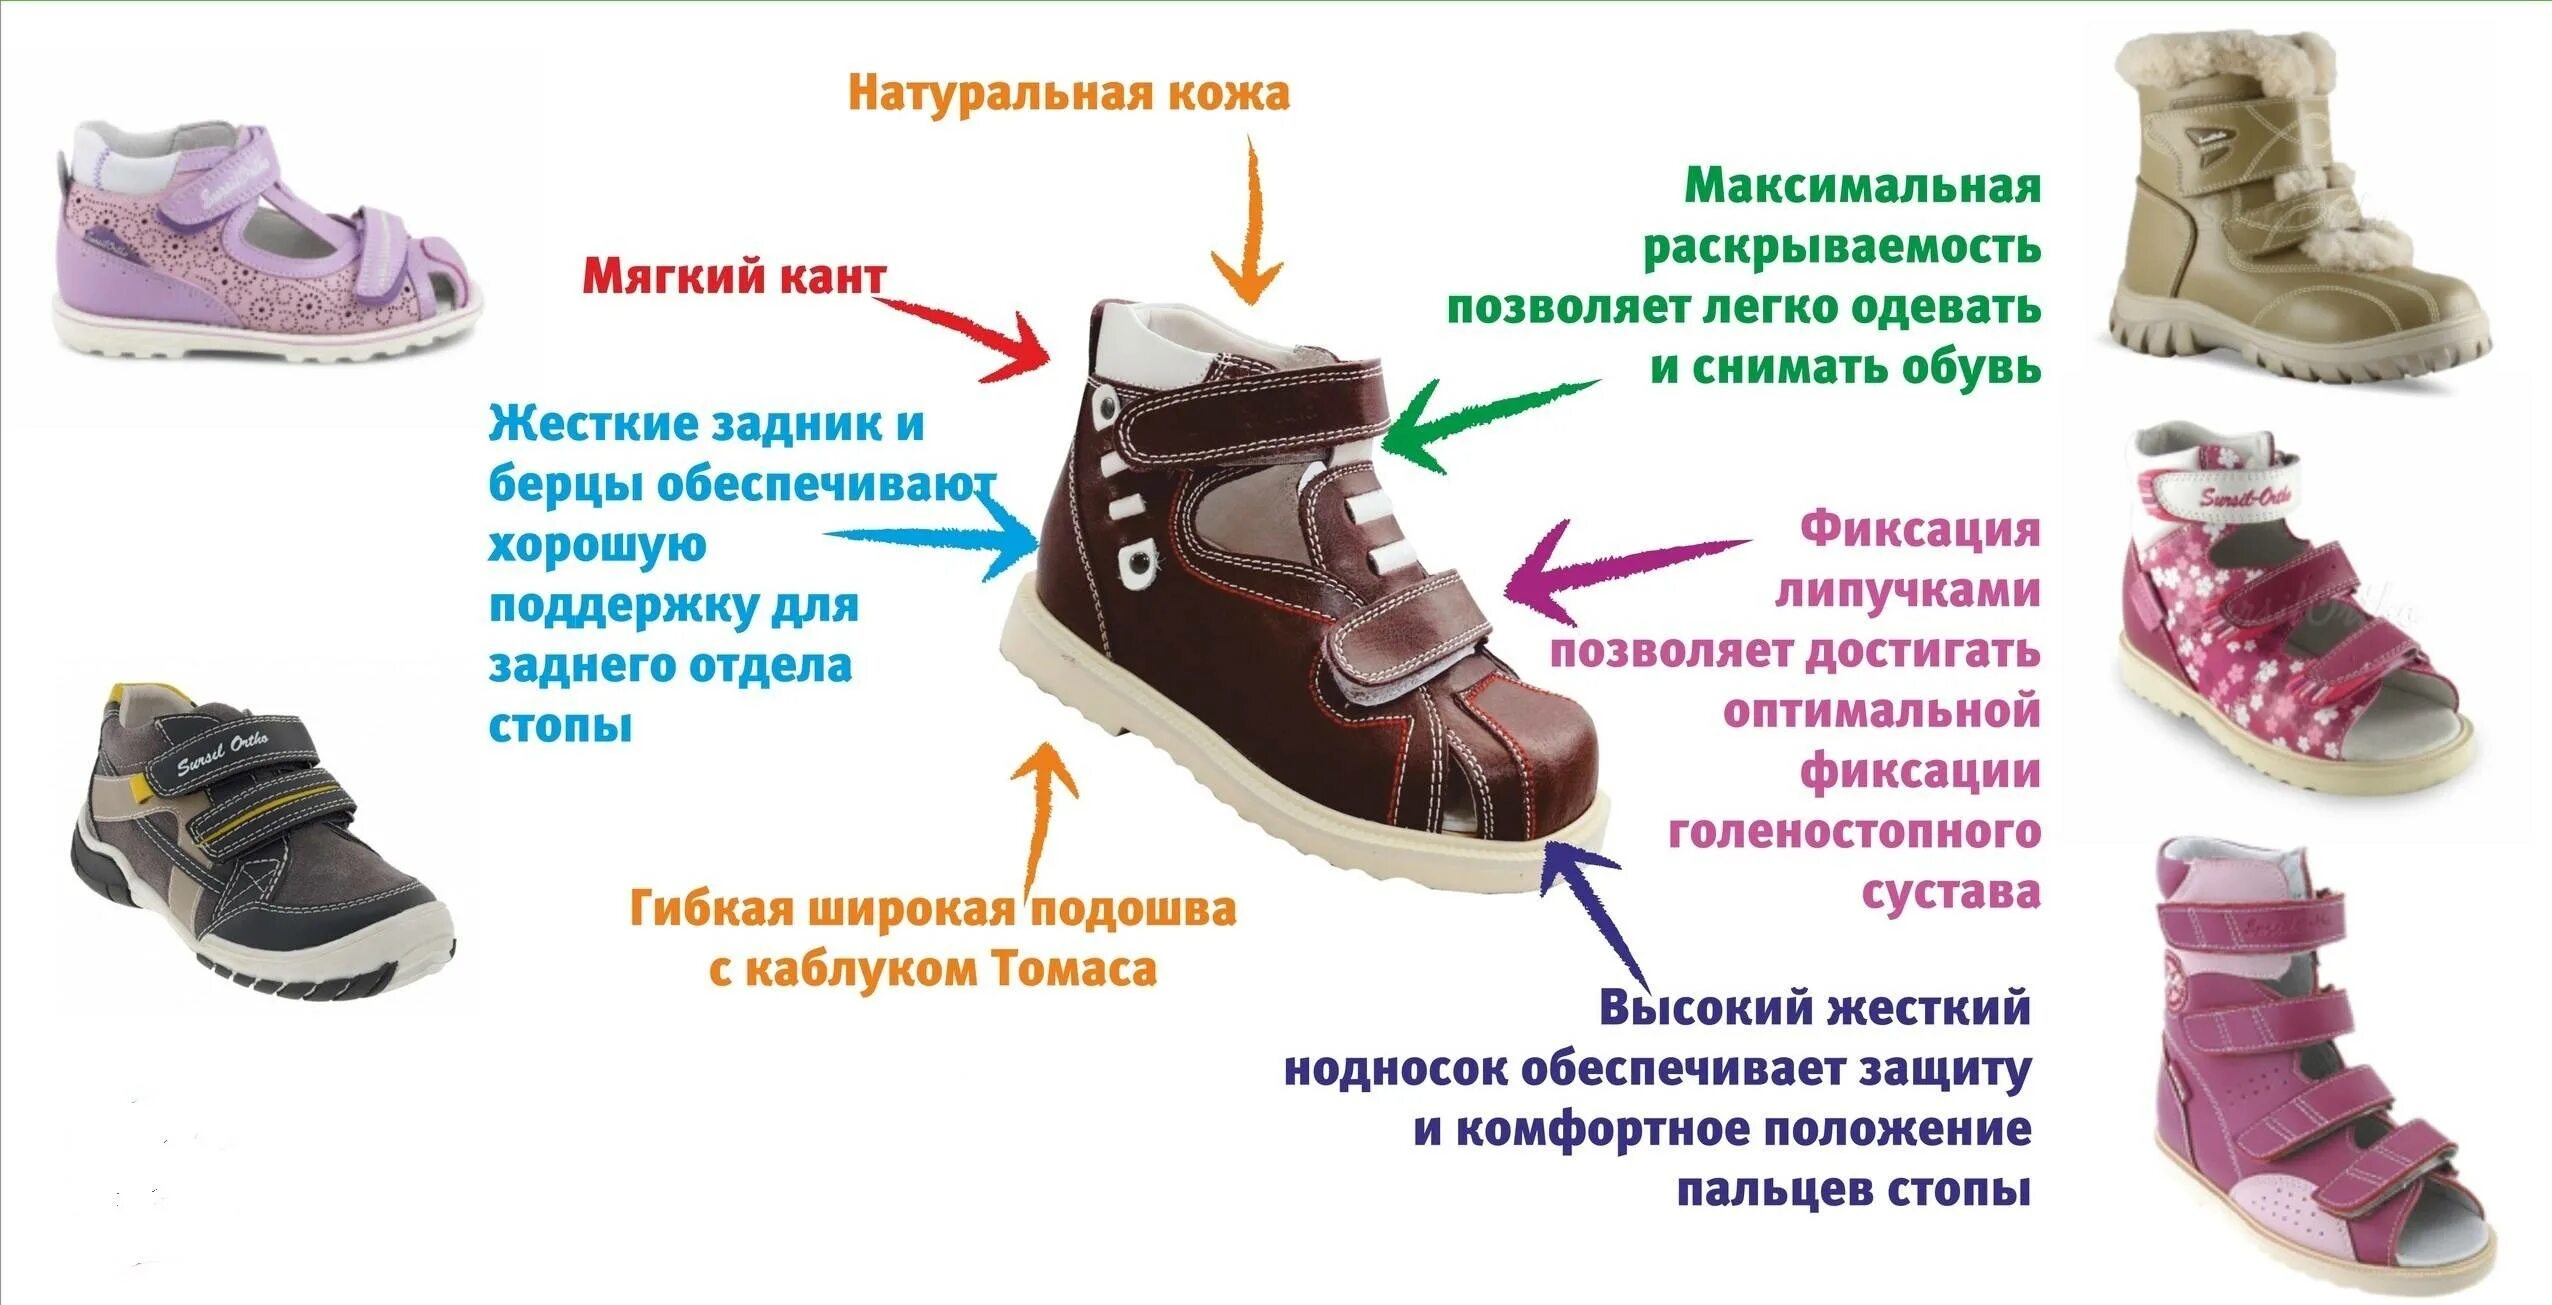 Ортопедические обув для детей. Правильная обувь. Правильная обувь для детей. Правильная ортопедическая обувь. Как правильно подобрать обувь ребенку